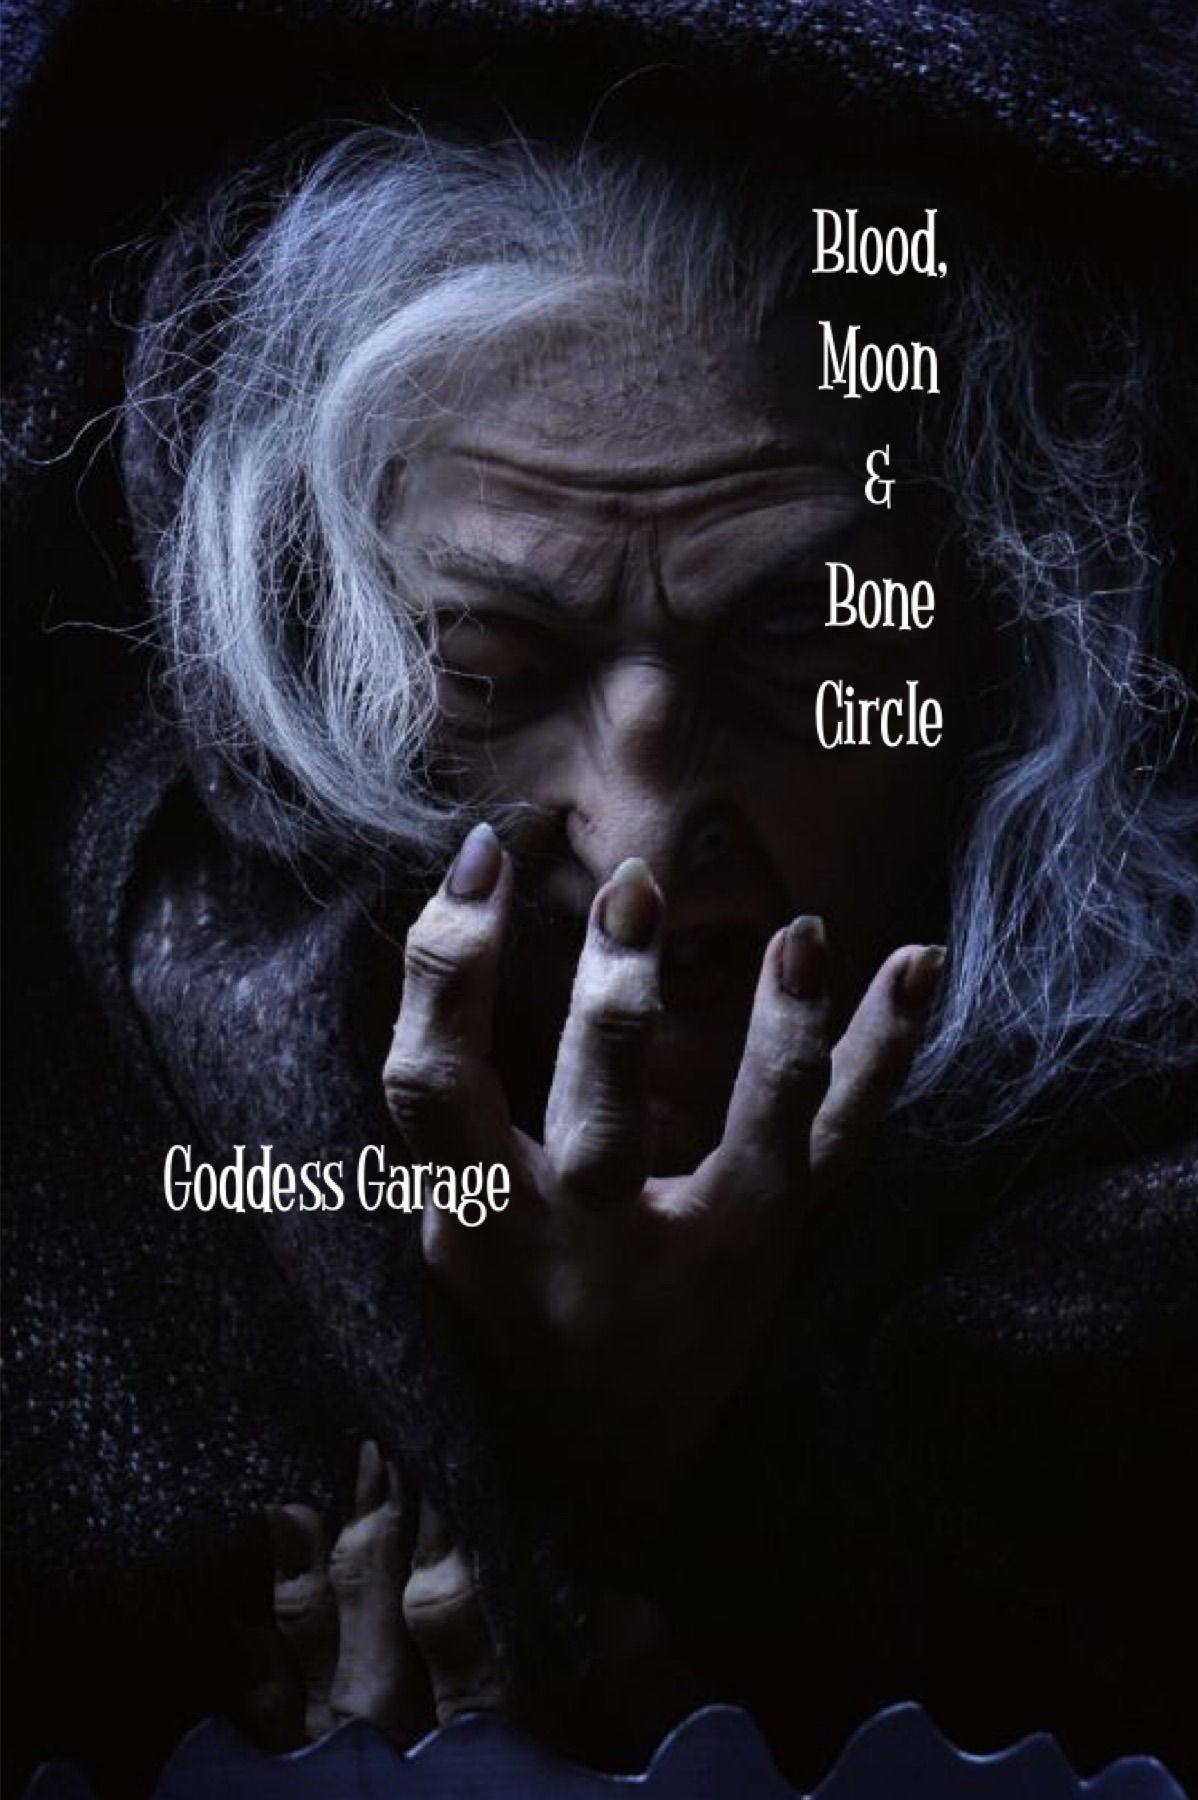 Blood, Moon & Bone Circle